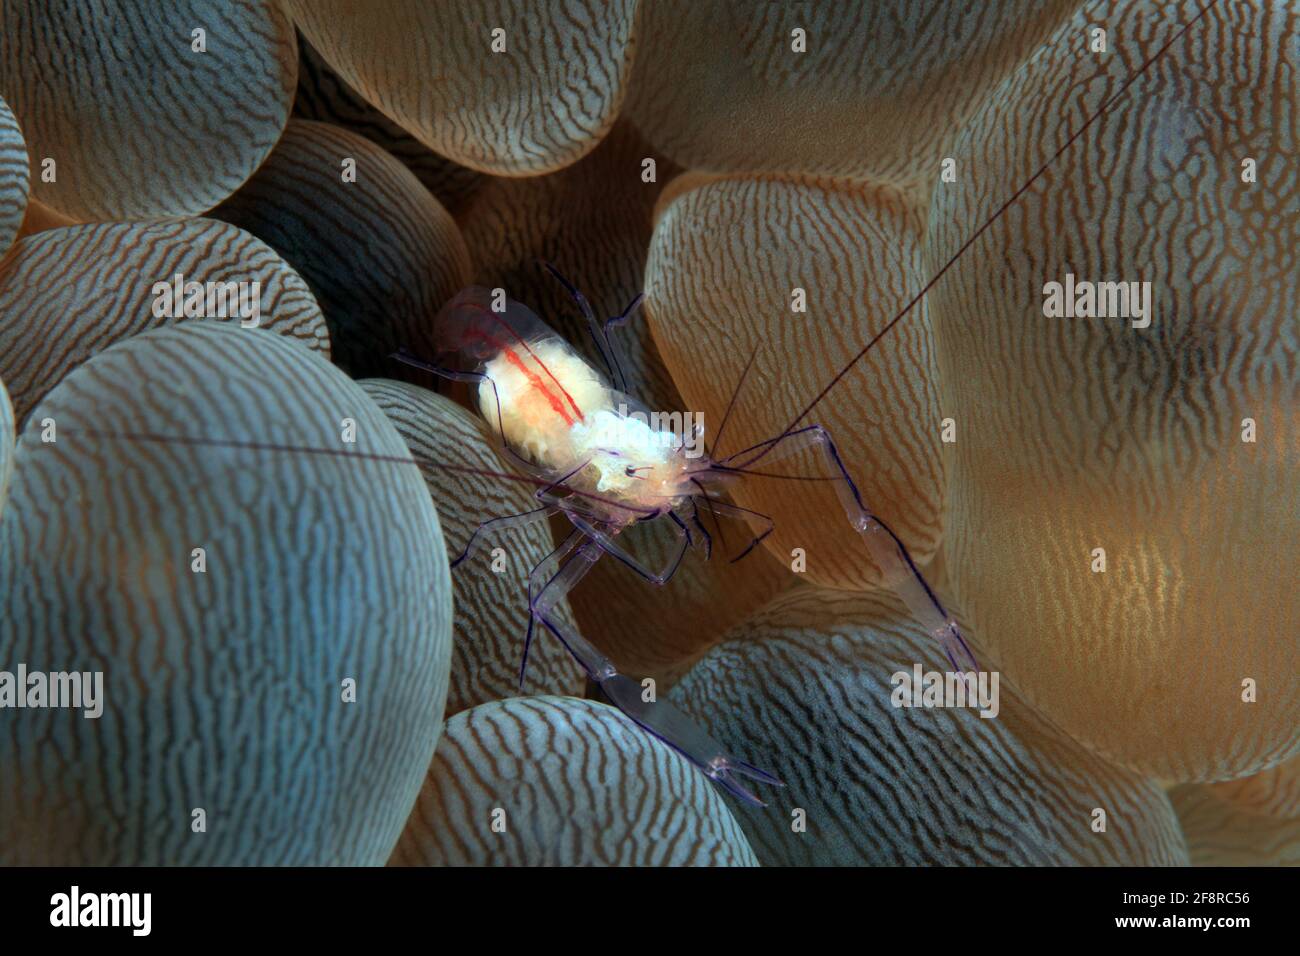 Die Blasenkorallen-Garnele (Vir philippinensis) lebt ausschliesslich in der Blasenkoralle Plerogyra sinusosa (Lembeh, Sulawesi, Indonesien) - Bubbleecor Foto Stock